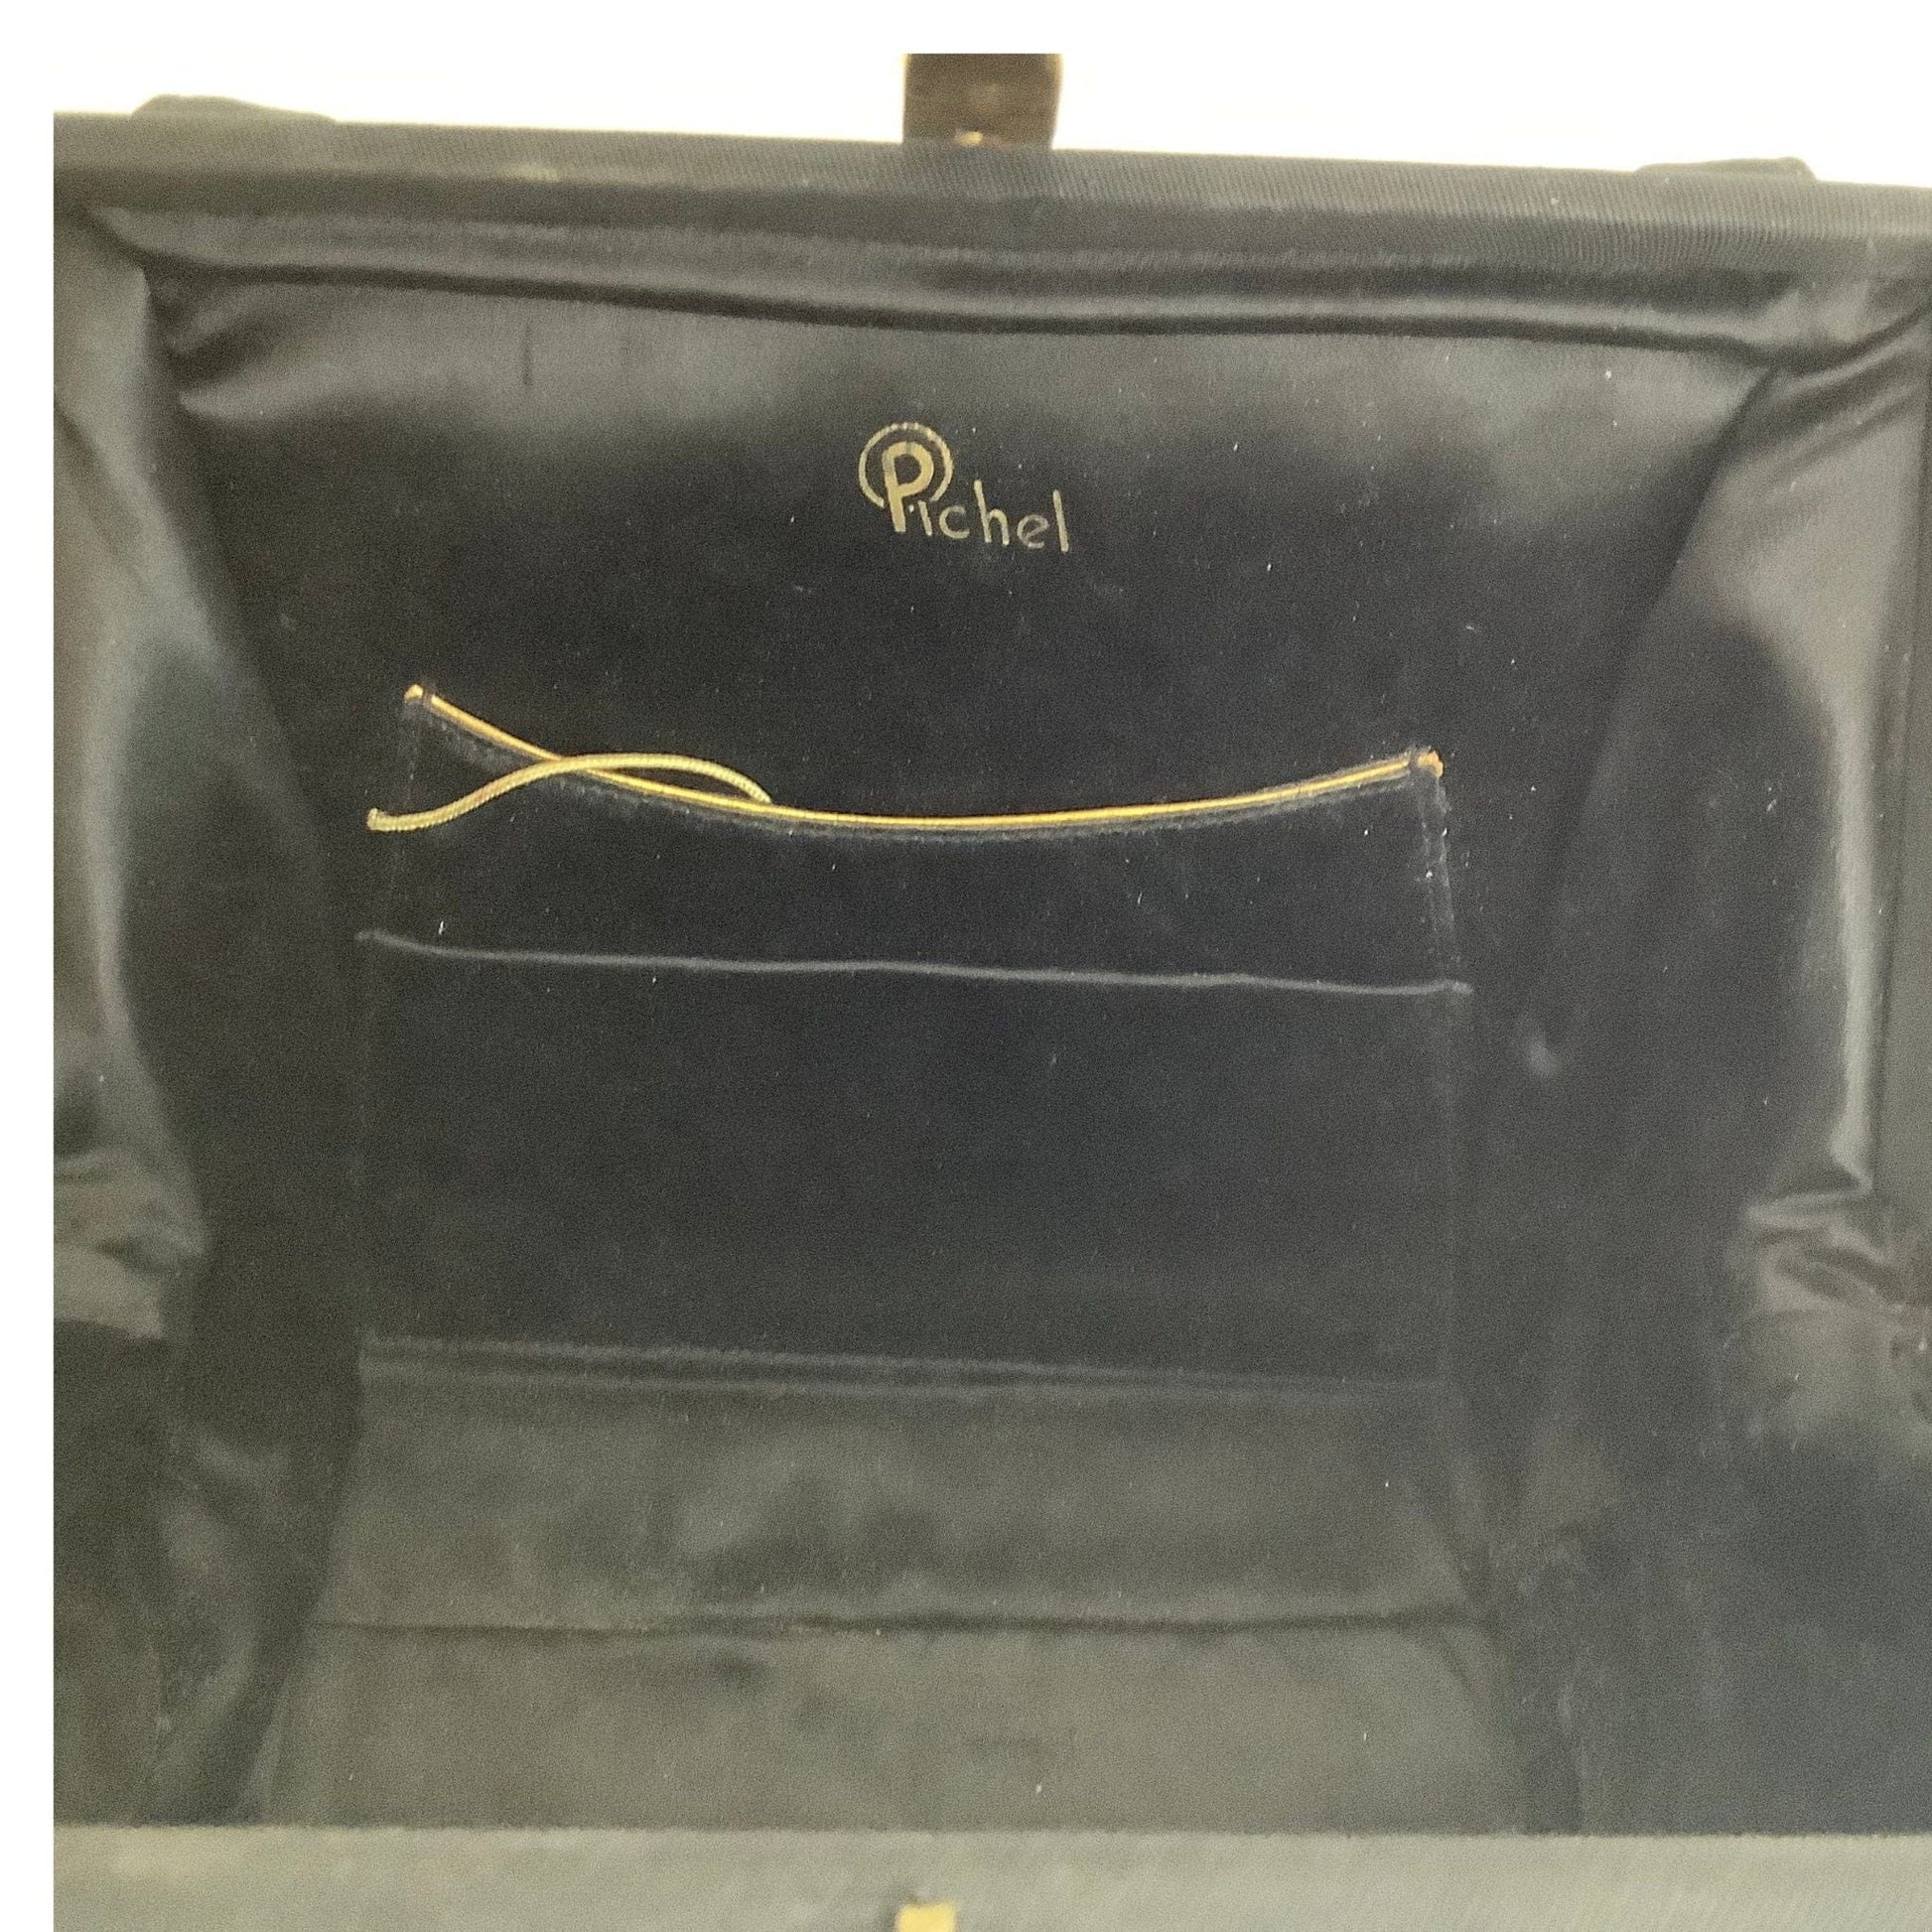 VTG Embroidered Pichel Bag Black / Textile / Vintage 1950s